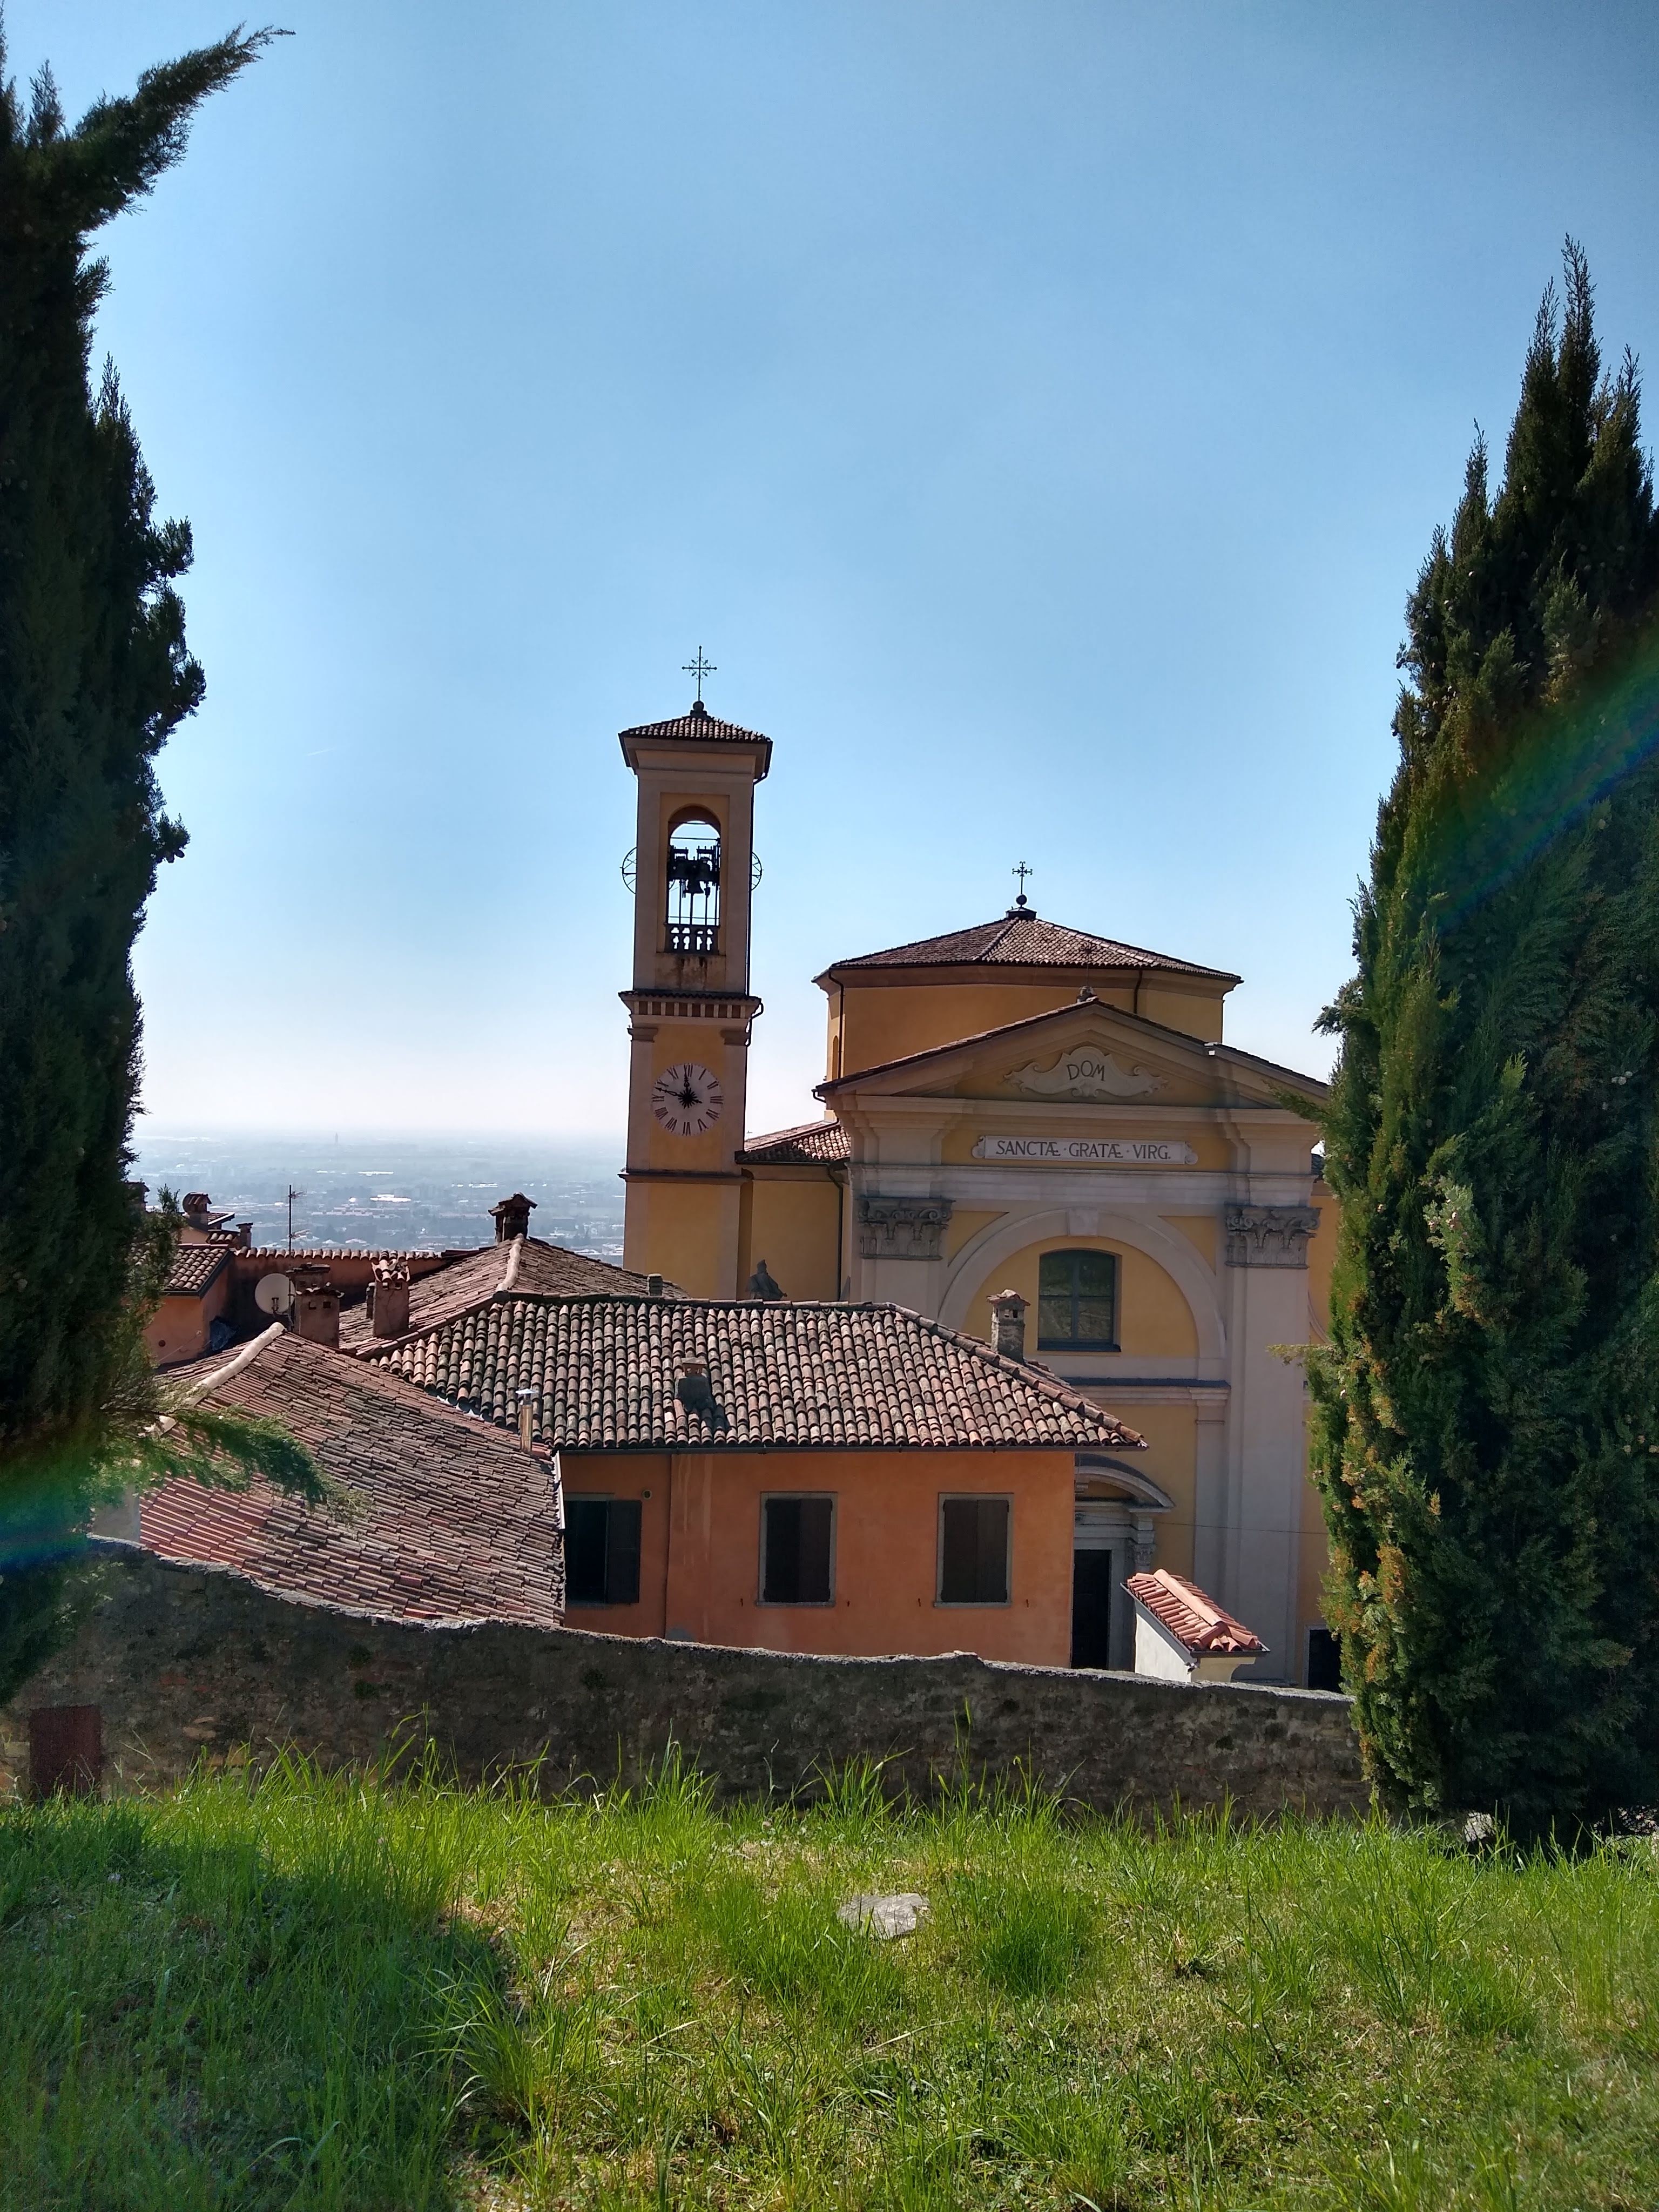 Bergamo stad, fin utflykt med guidning i gamla stan